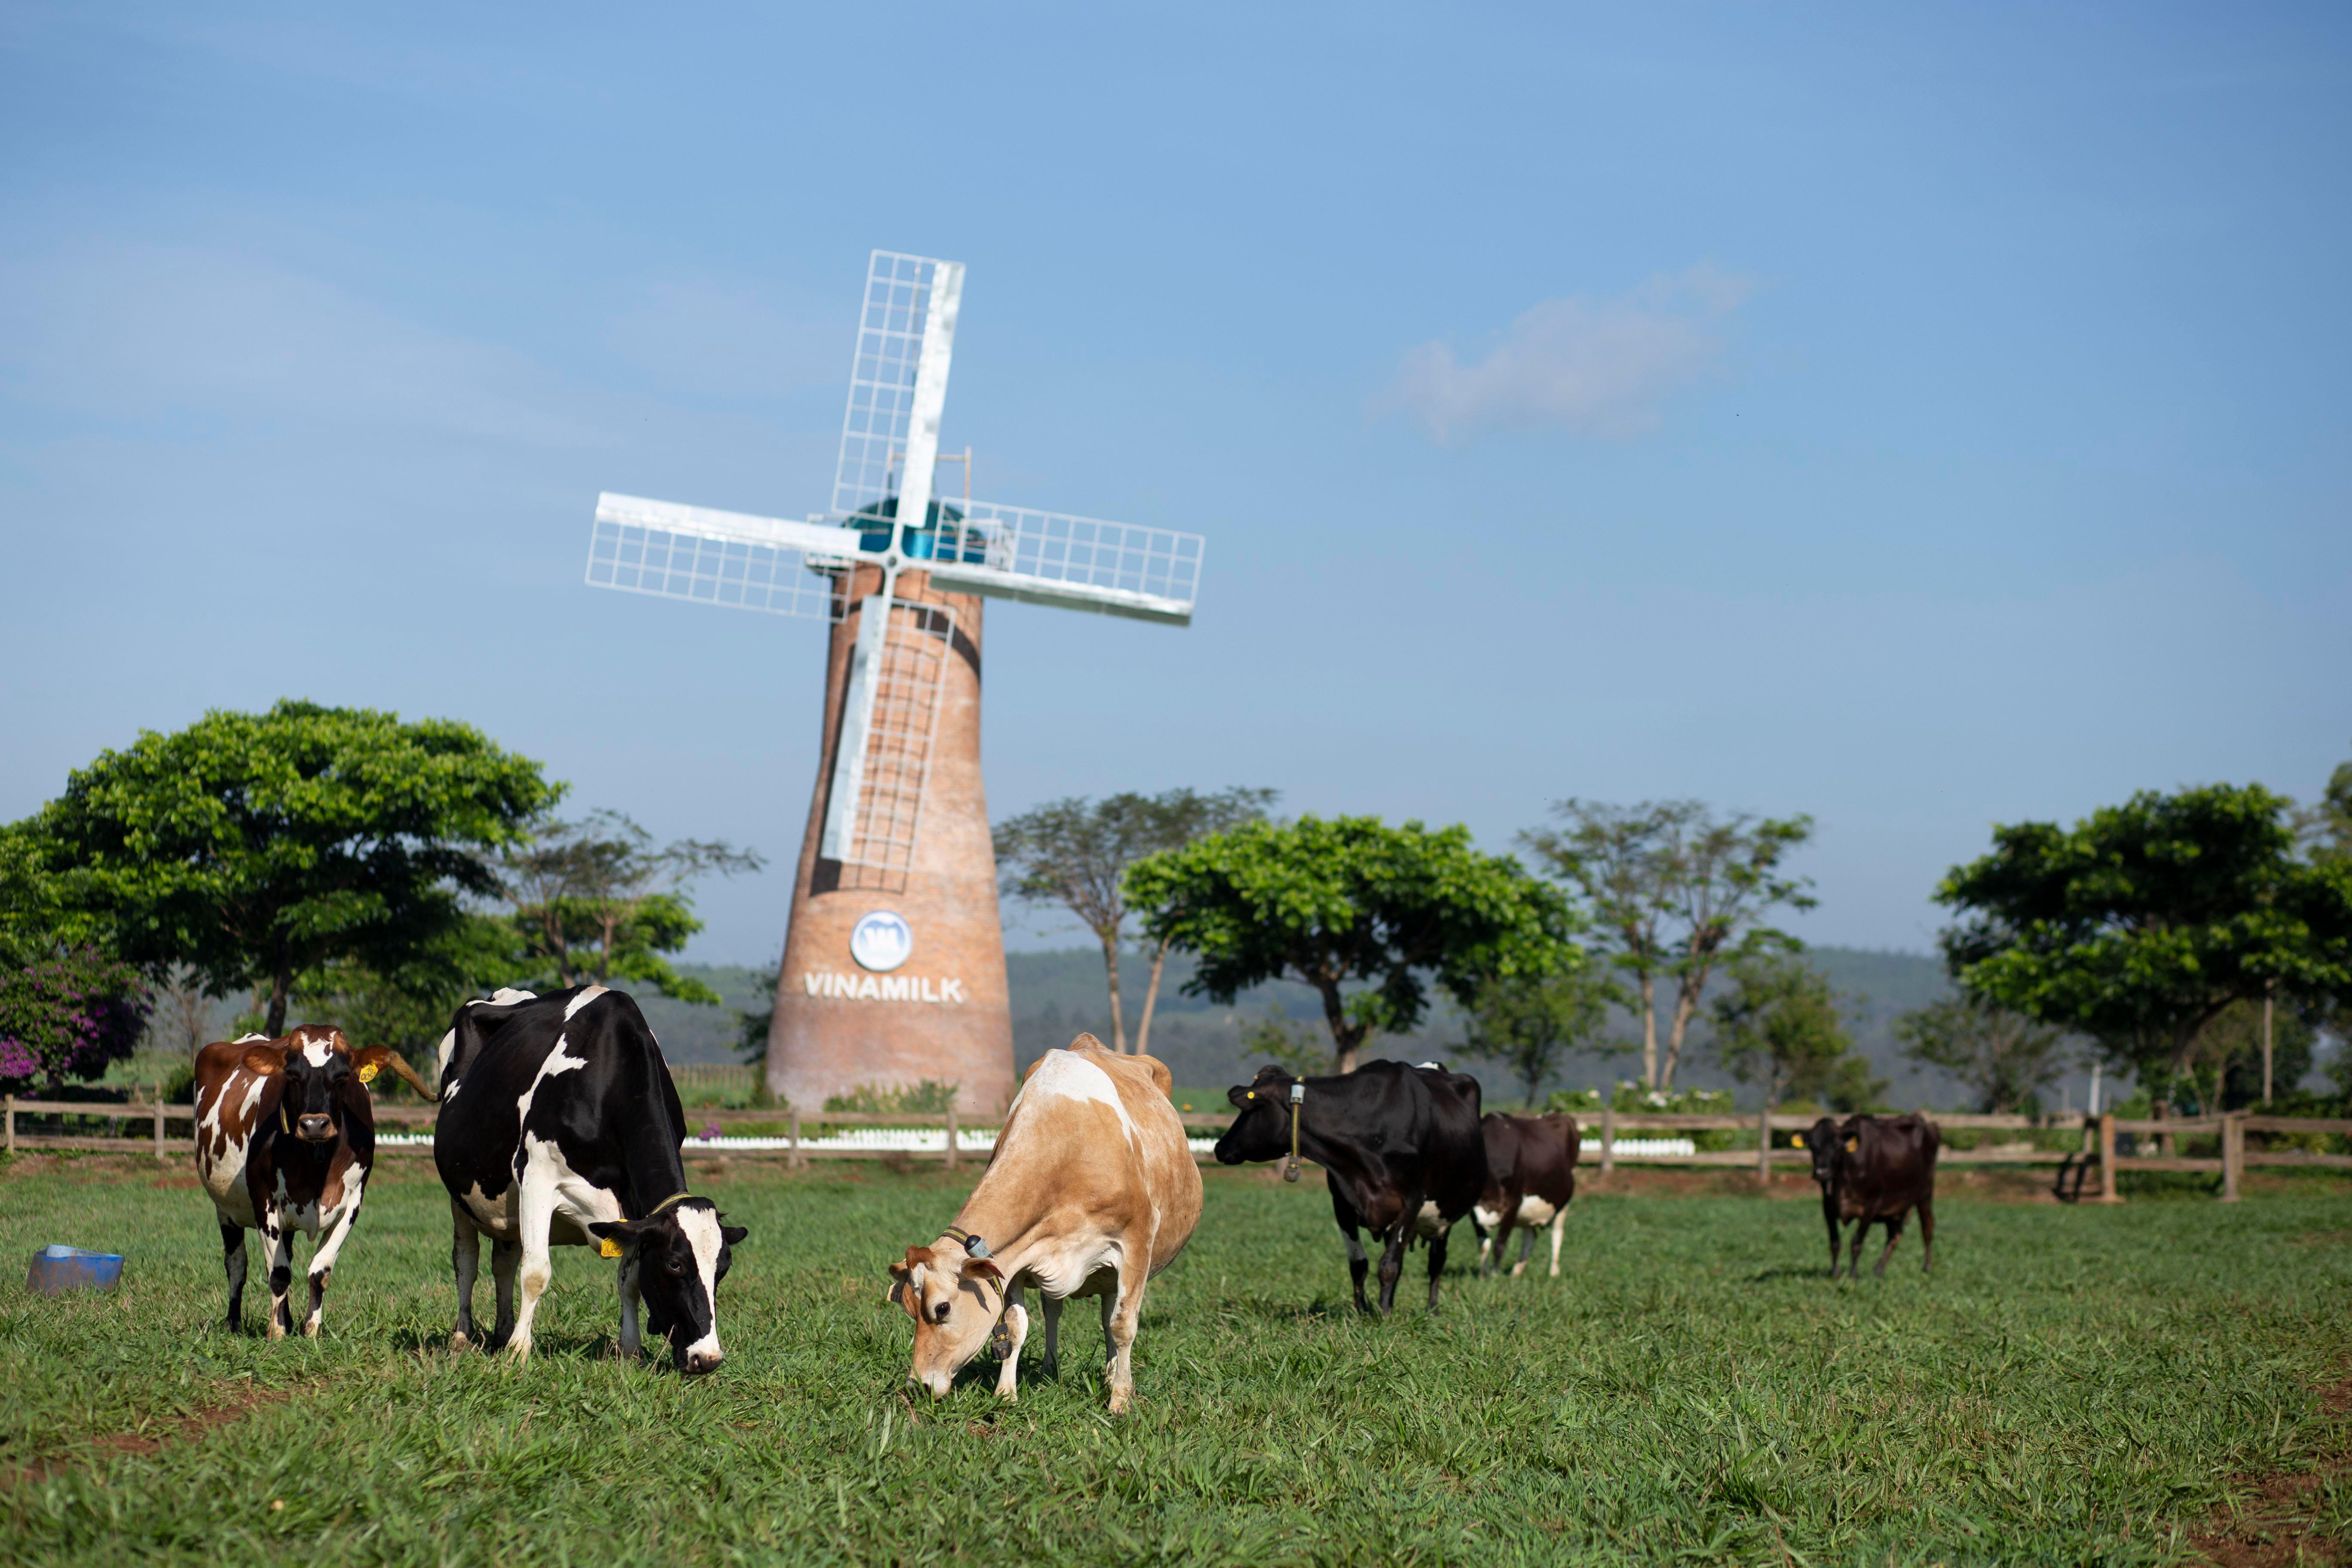 Các trang trại bò sữa Organic của Vinamilk là một trong những điểm nhấn được Hội nghị đánh giá cao. Ảnh: PV